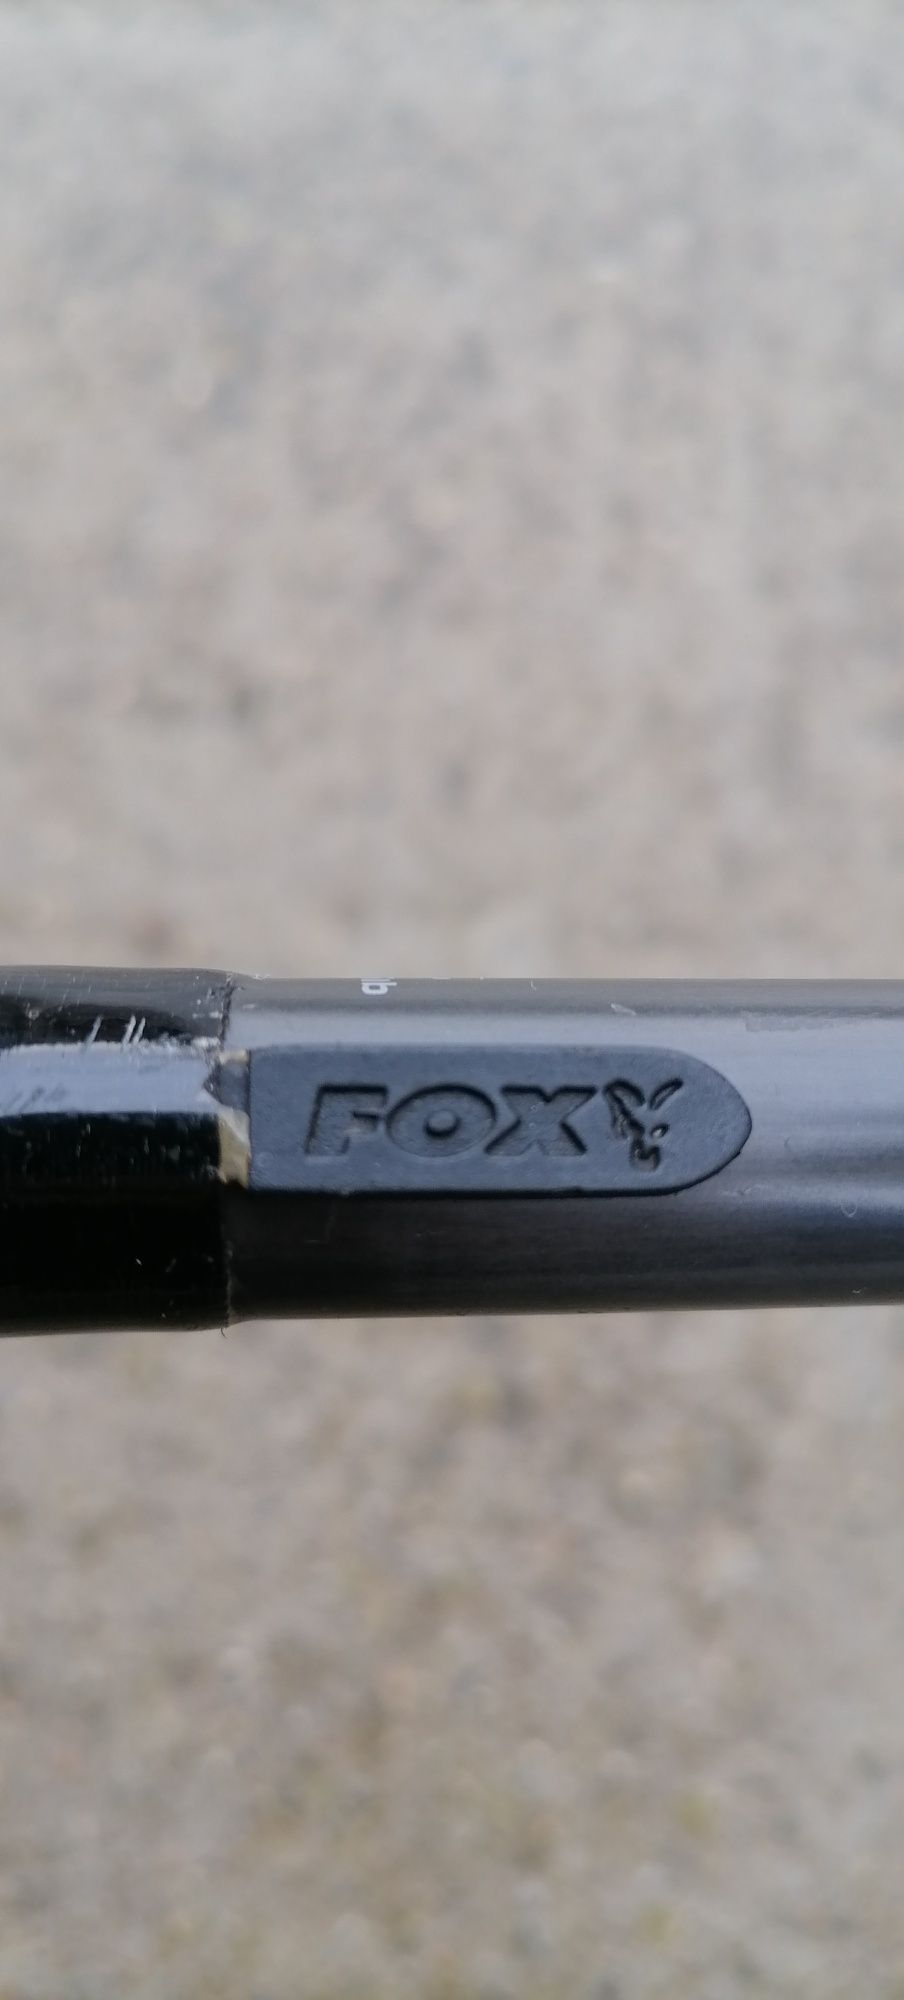 Въдица FOX 12f.  2.75lb.